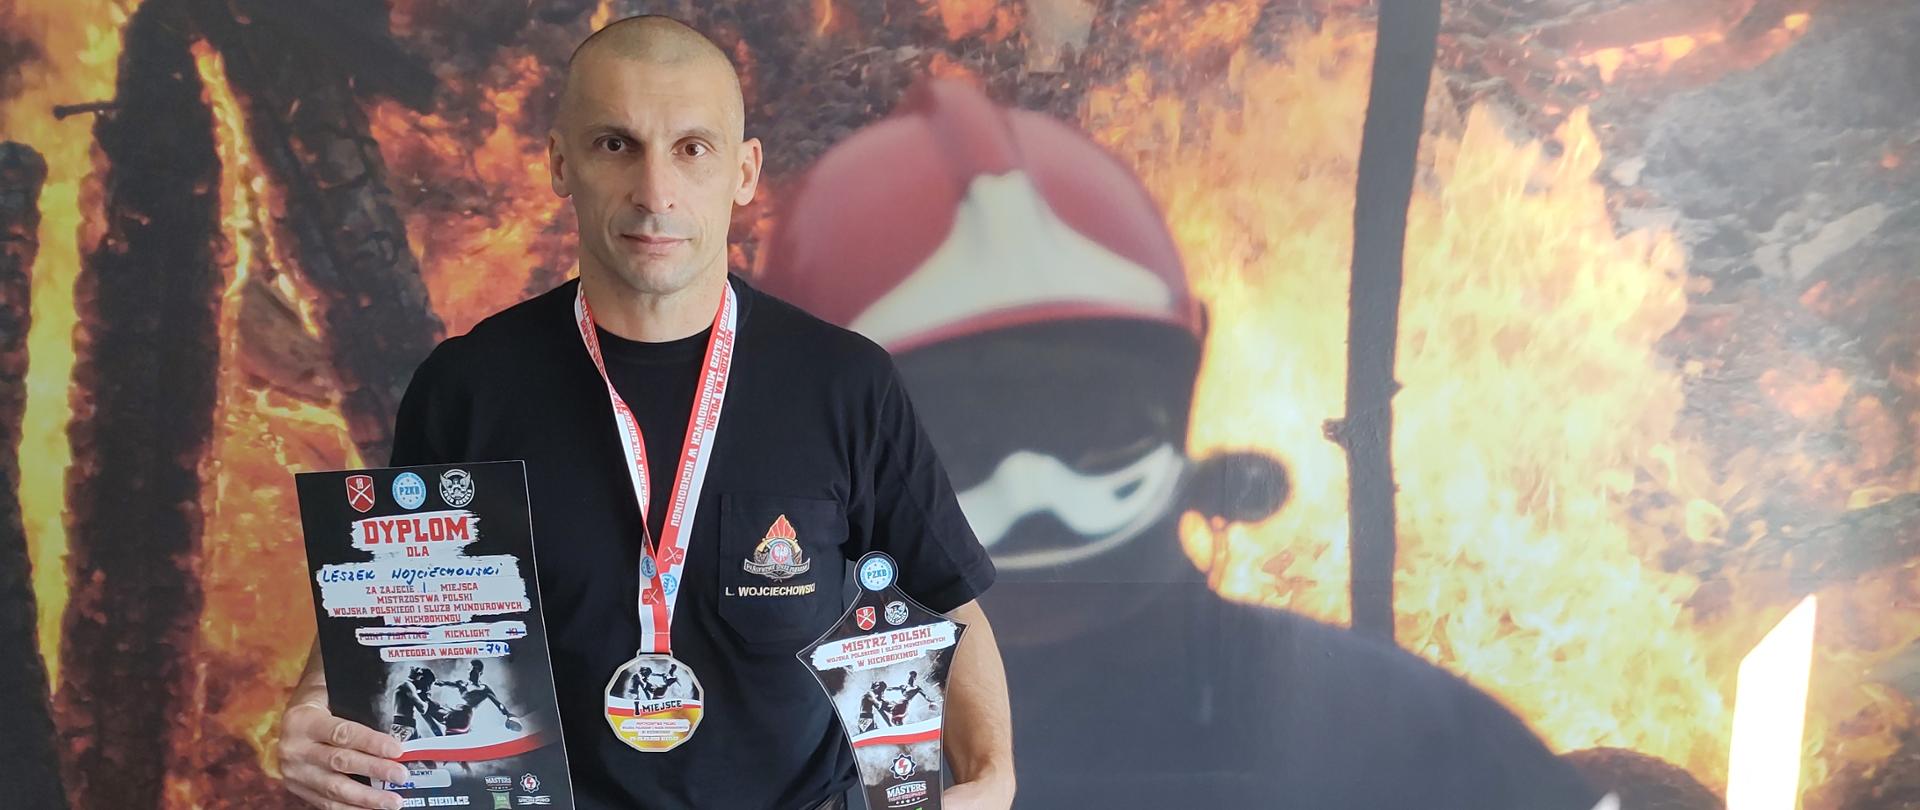 Leszek Wojciechowski Mistrzem Polski w Kickboxingu - strażak stoi wraz z medalem i pucharem